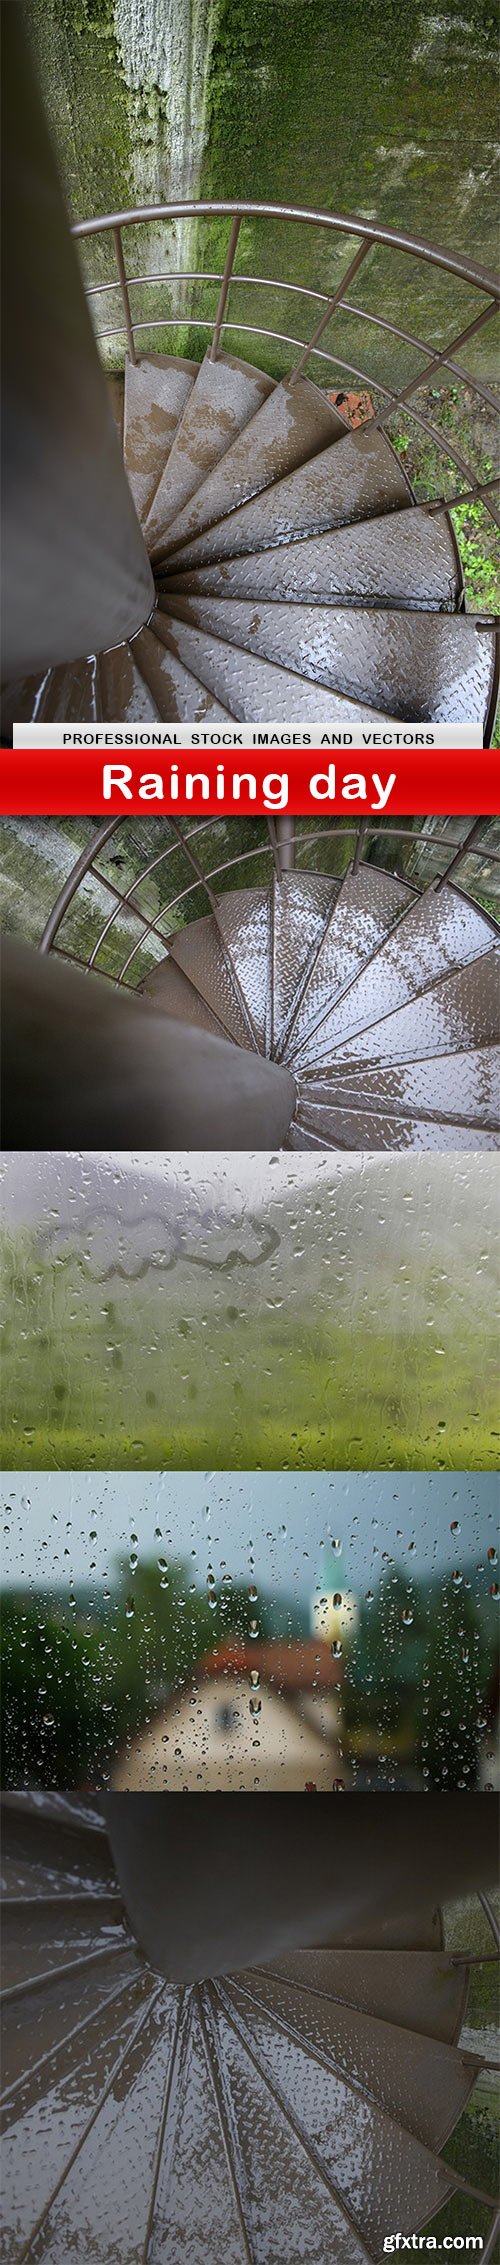 Raining day - 5 UHQ JPEG